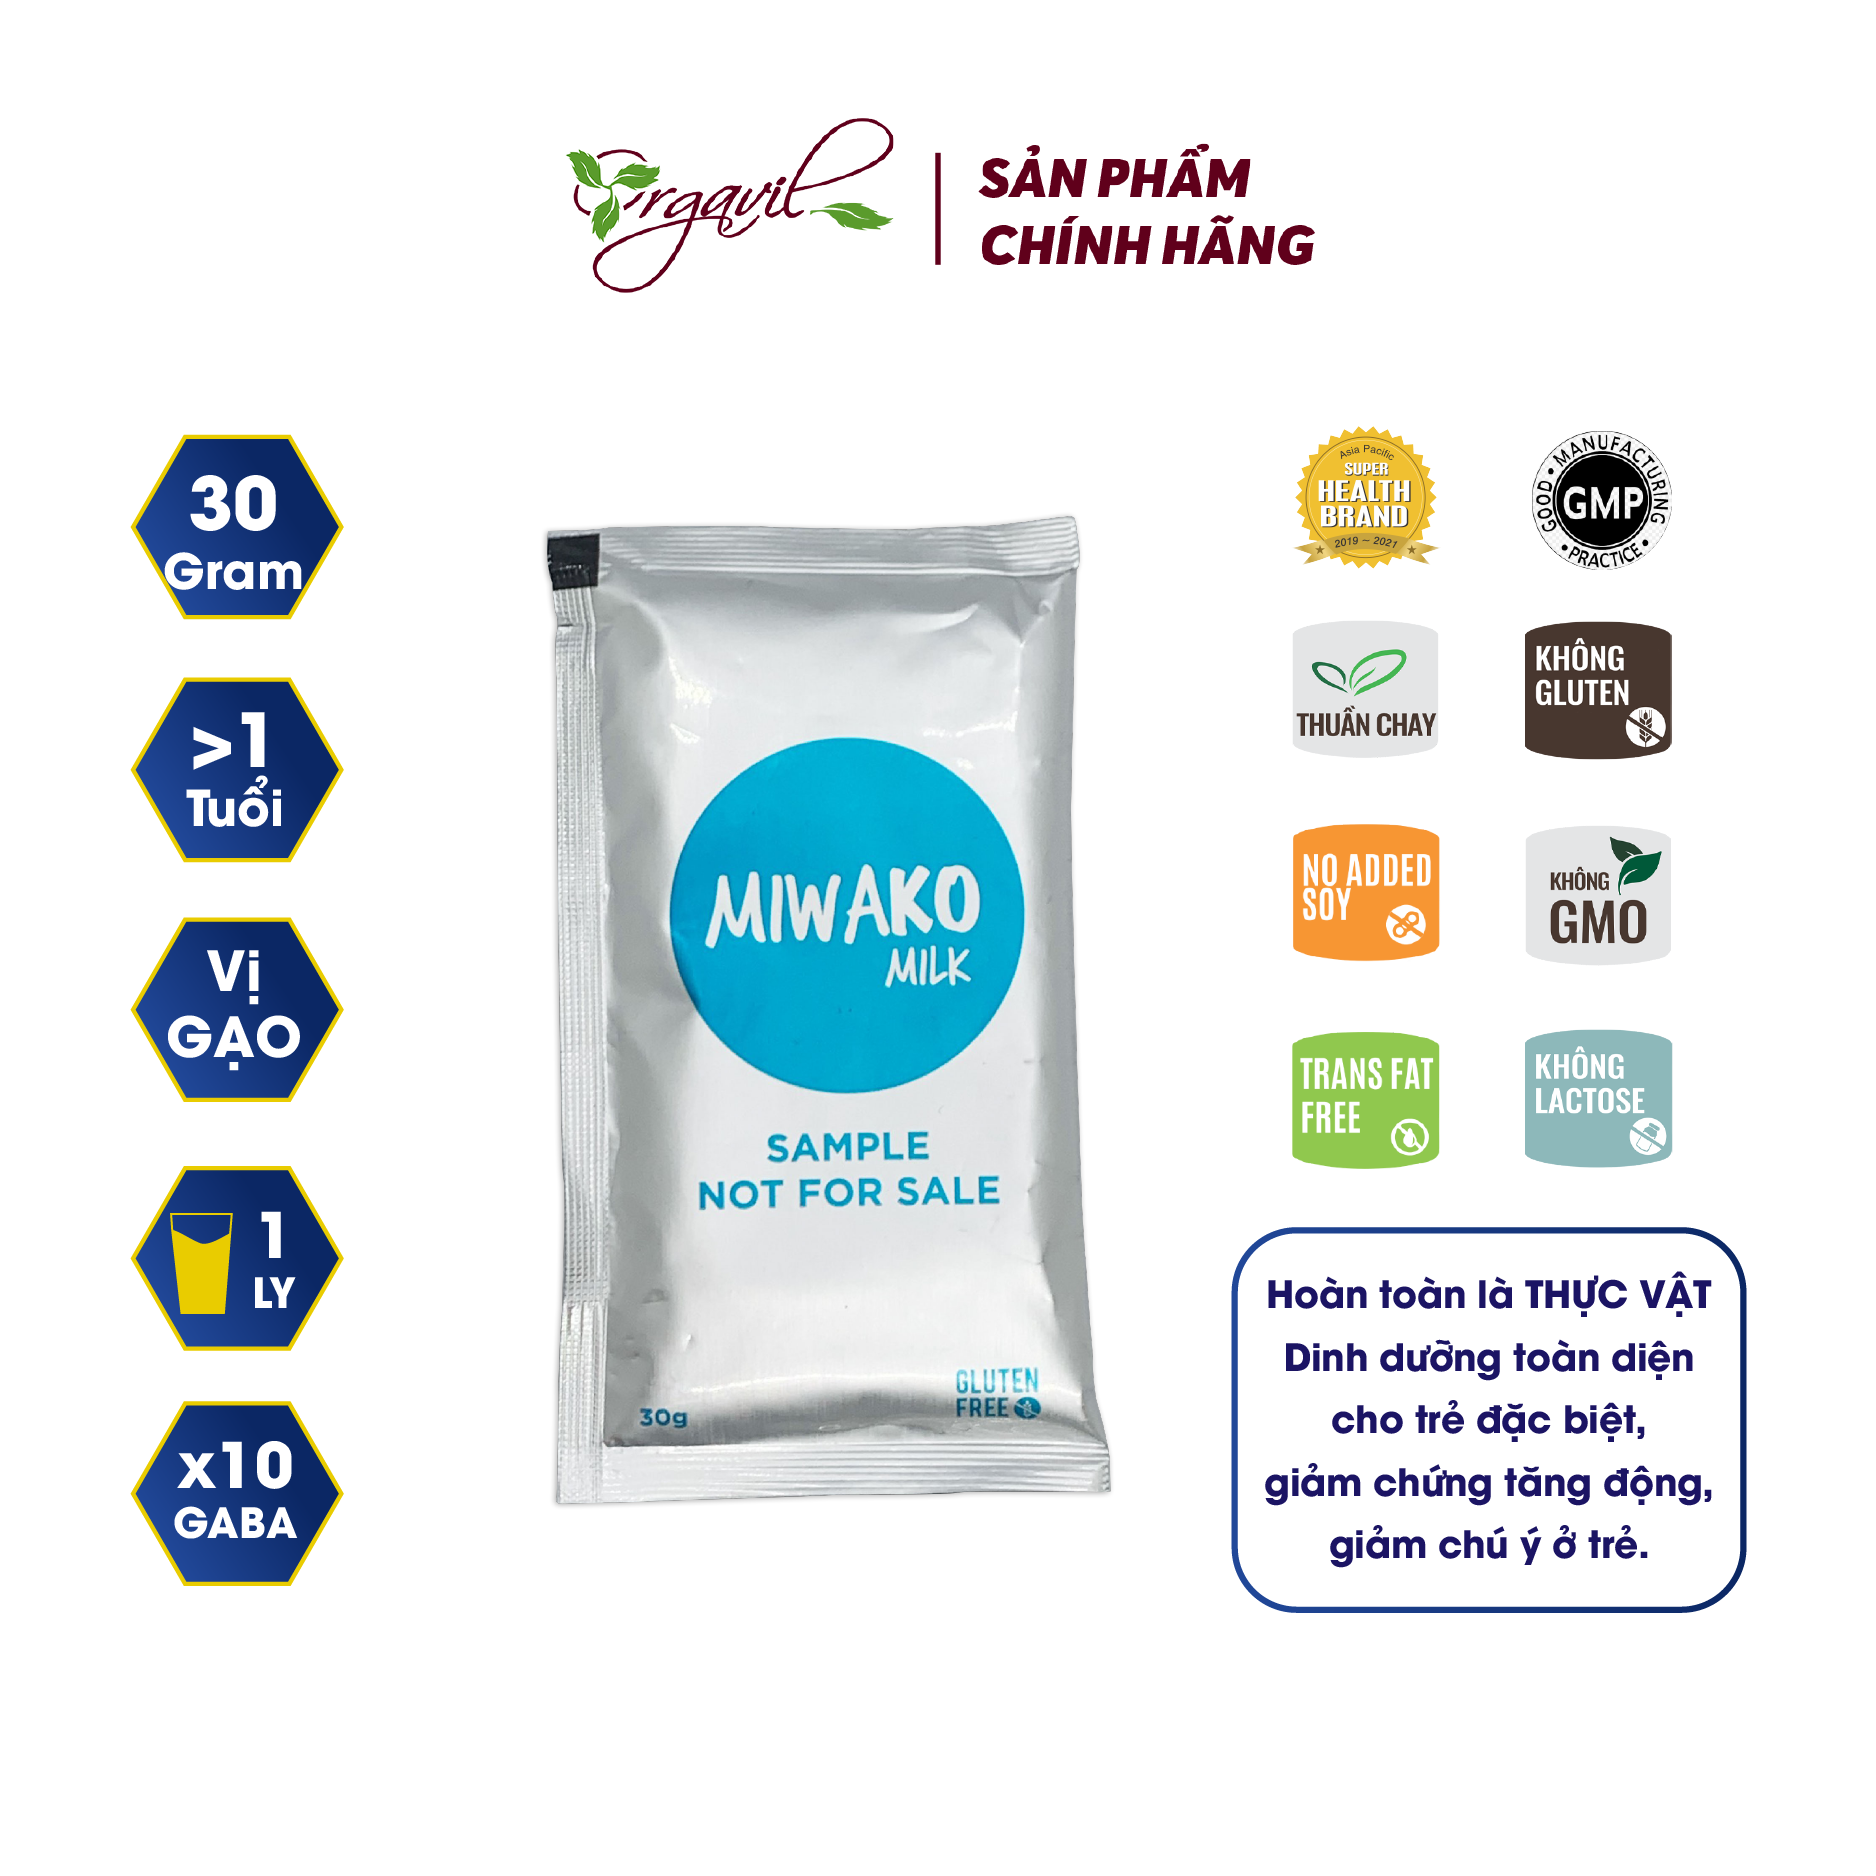 Sữa Miwako Gói Dùng Thử 30g, Sữa Thực Vật Hữu Cơ Miwako Vị Gạo